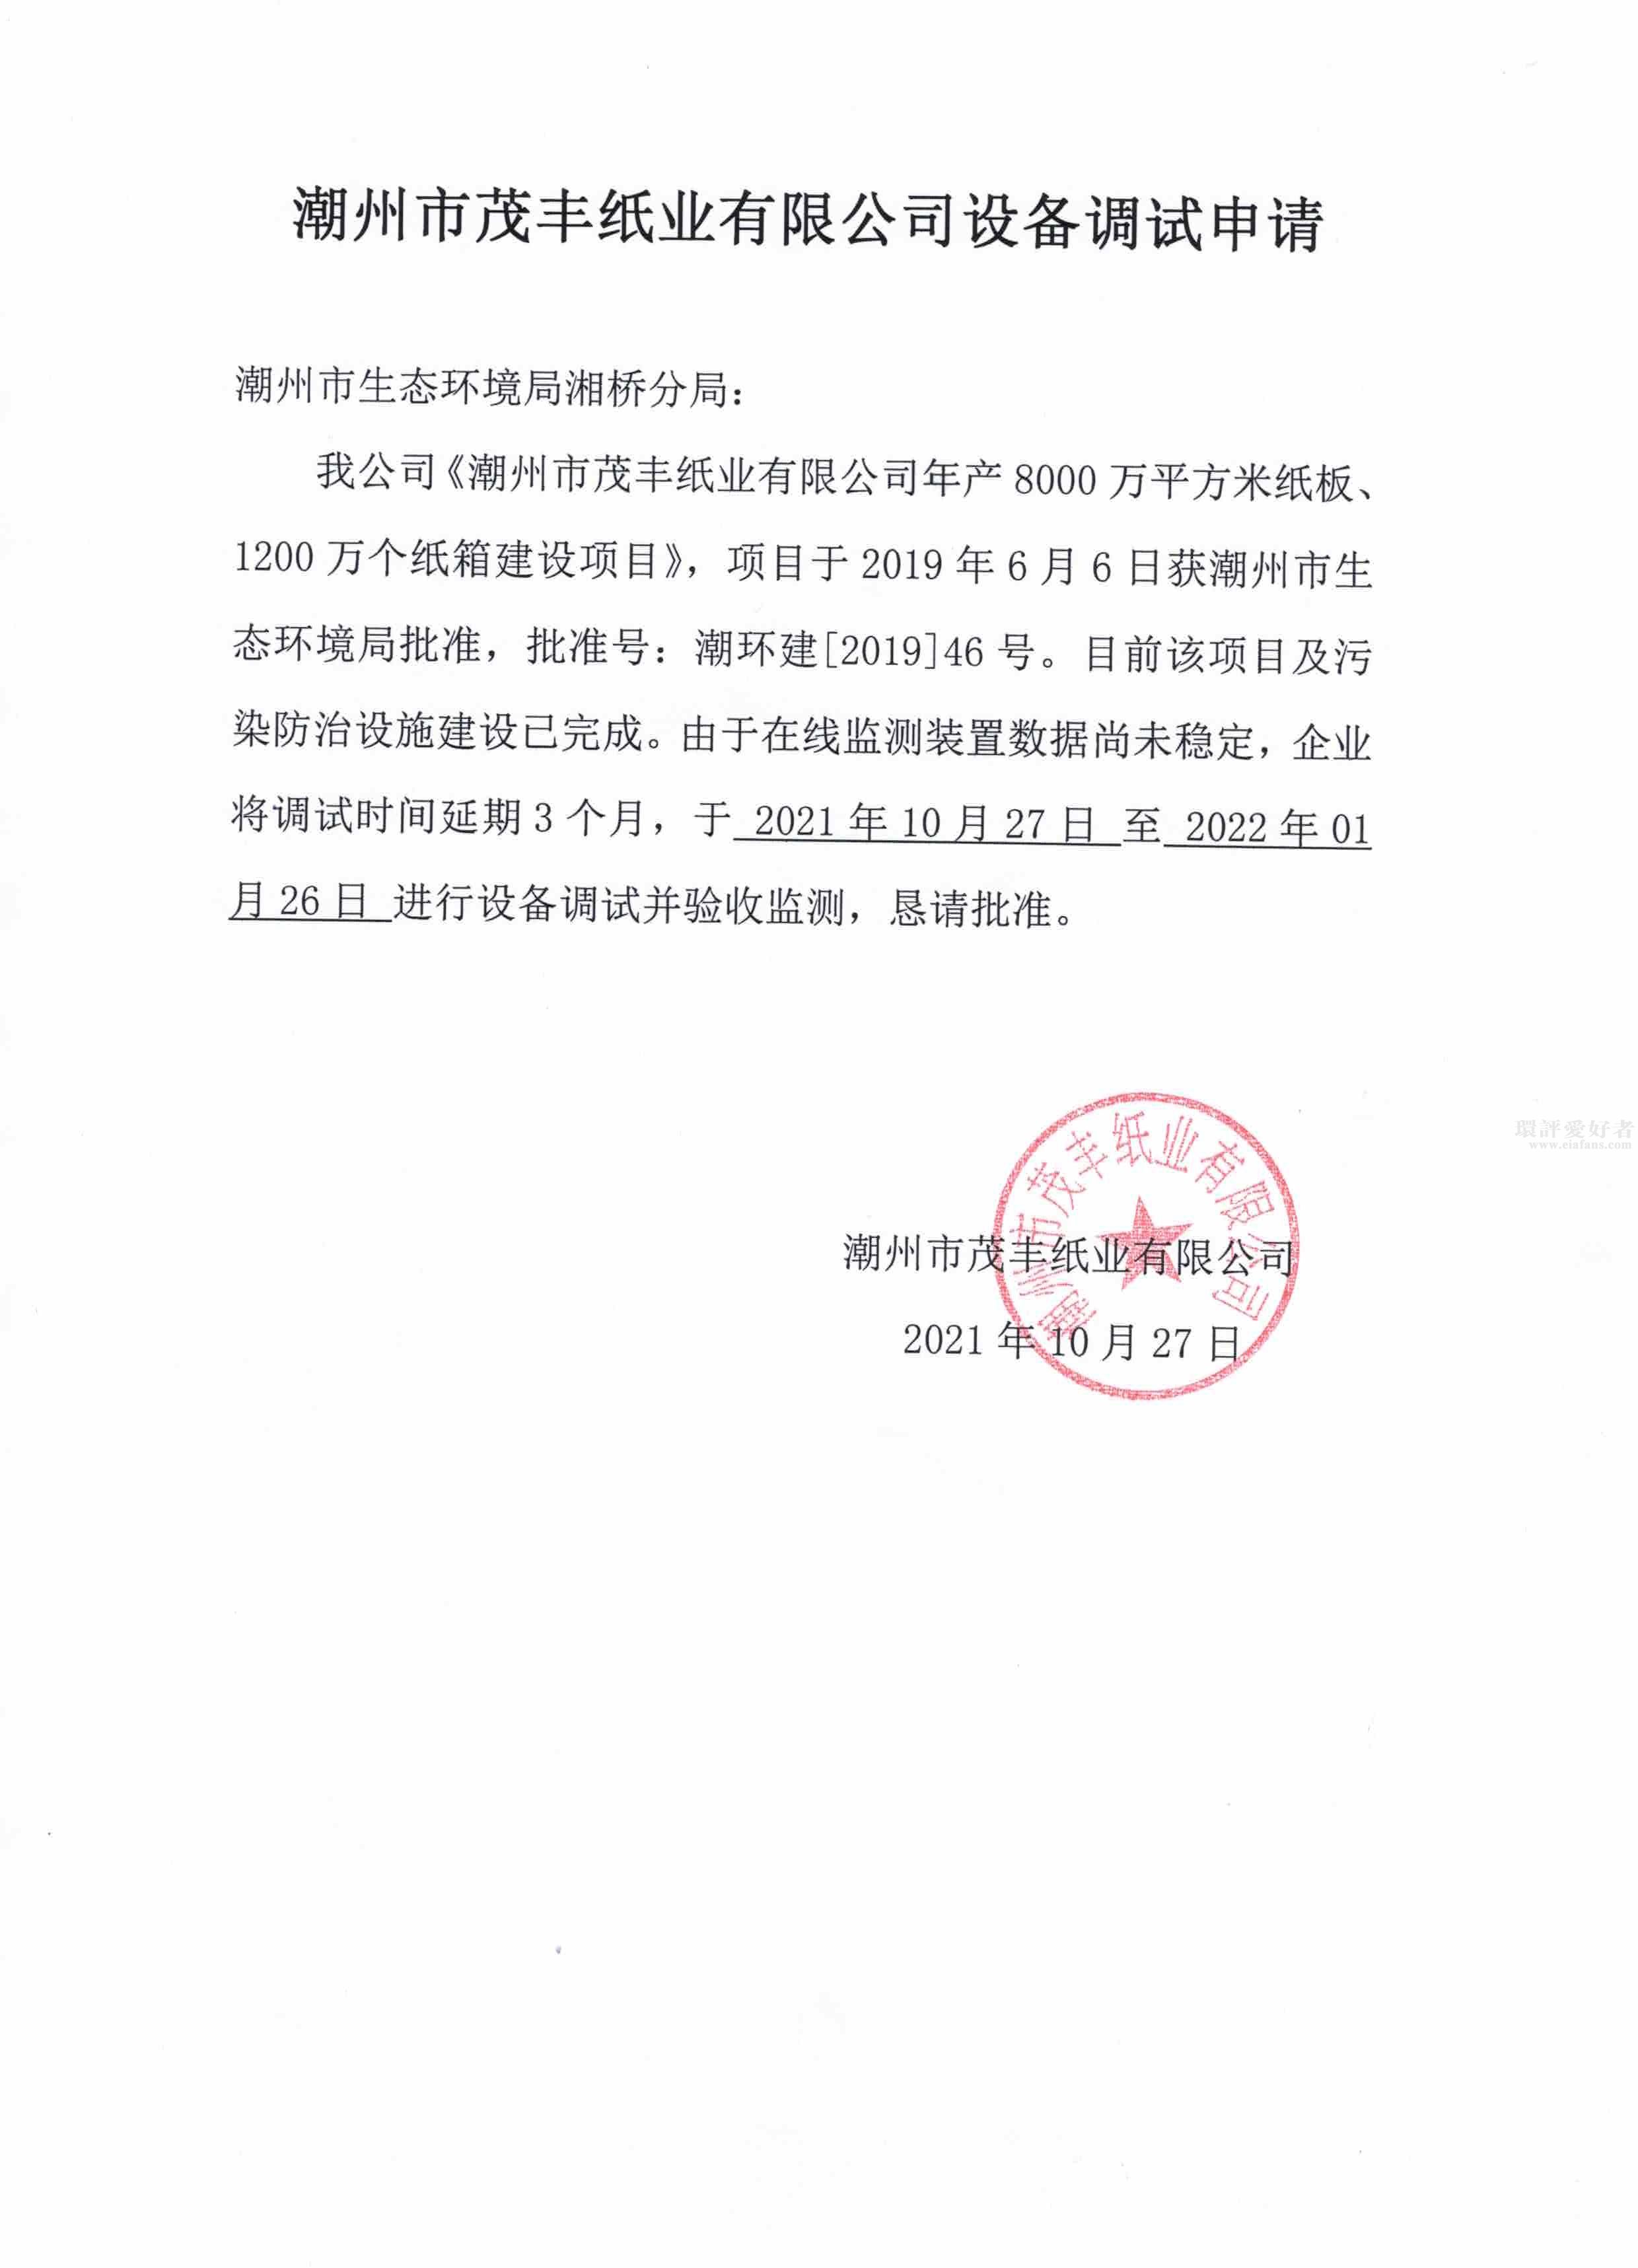 潮州市茂丰纸业有限公司设备调试申请（2021-10-27）.jpg